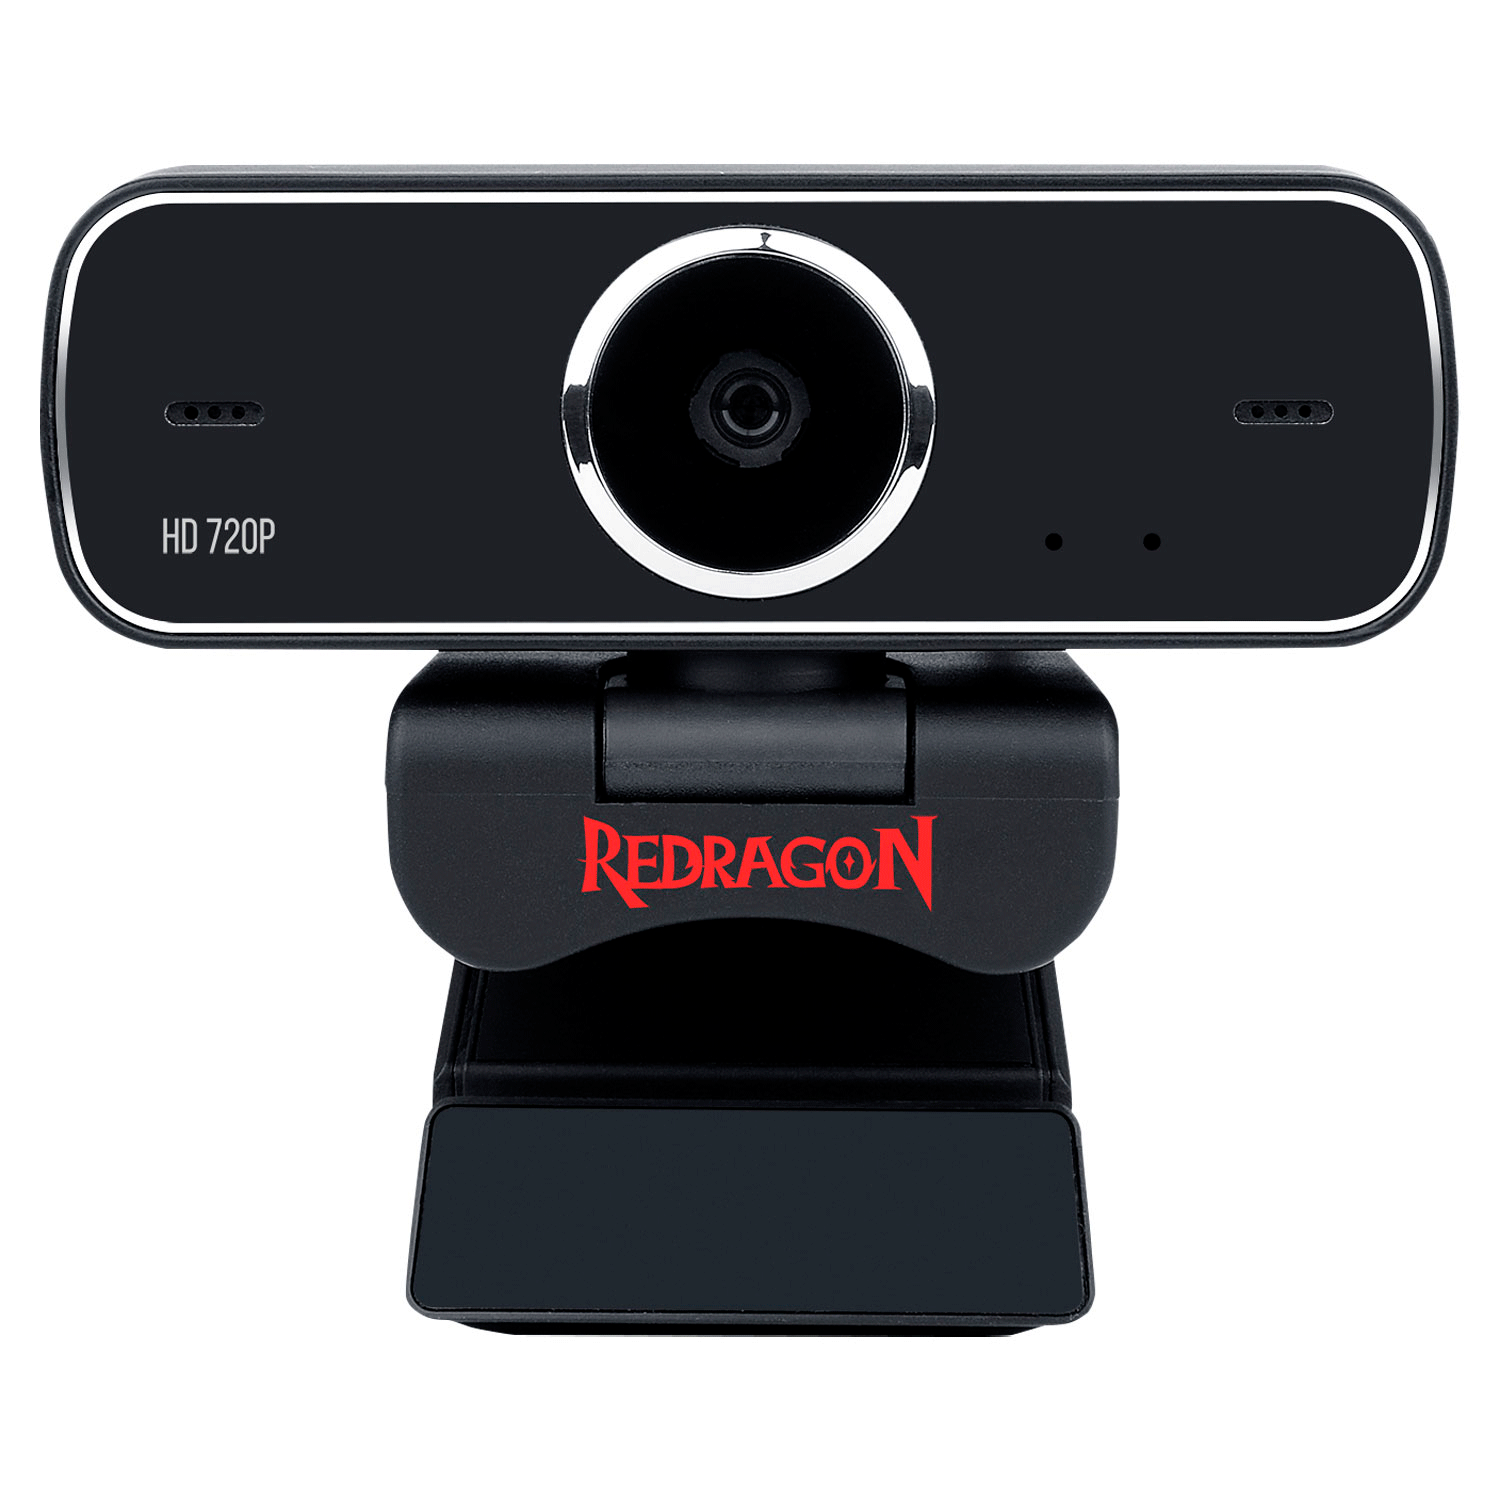 Webcam Redragon Skywalker Fobos / 720p - Preto (GW600-1)